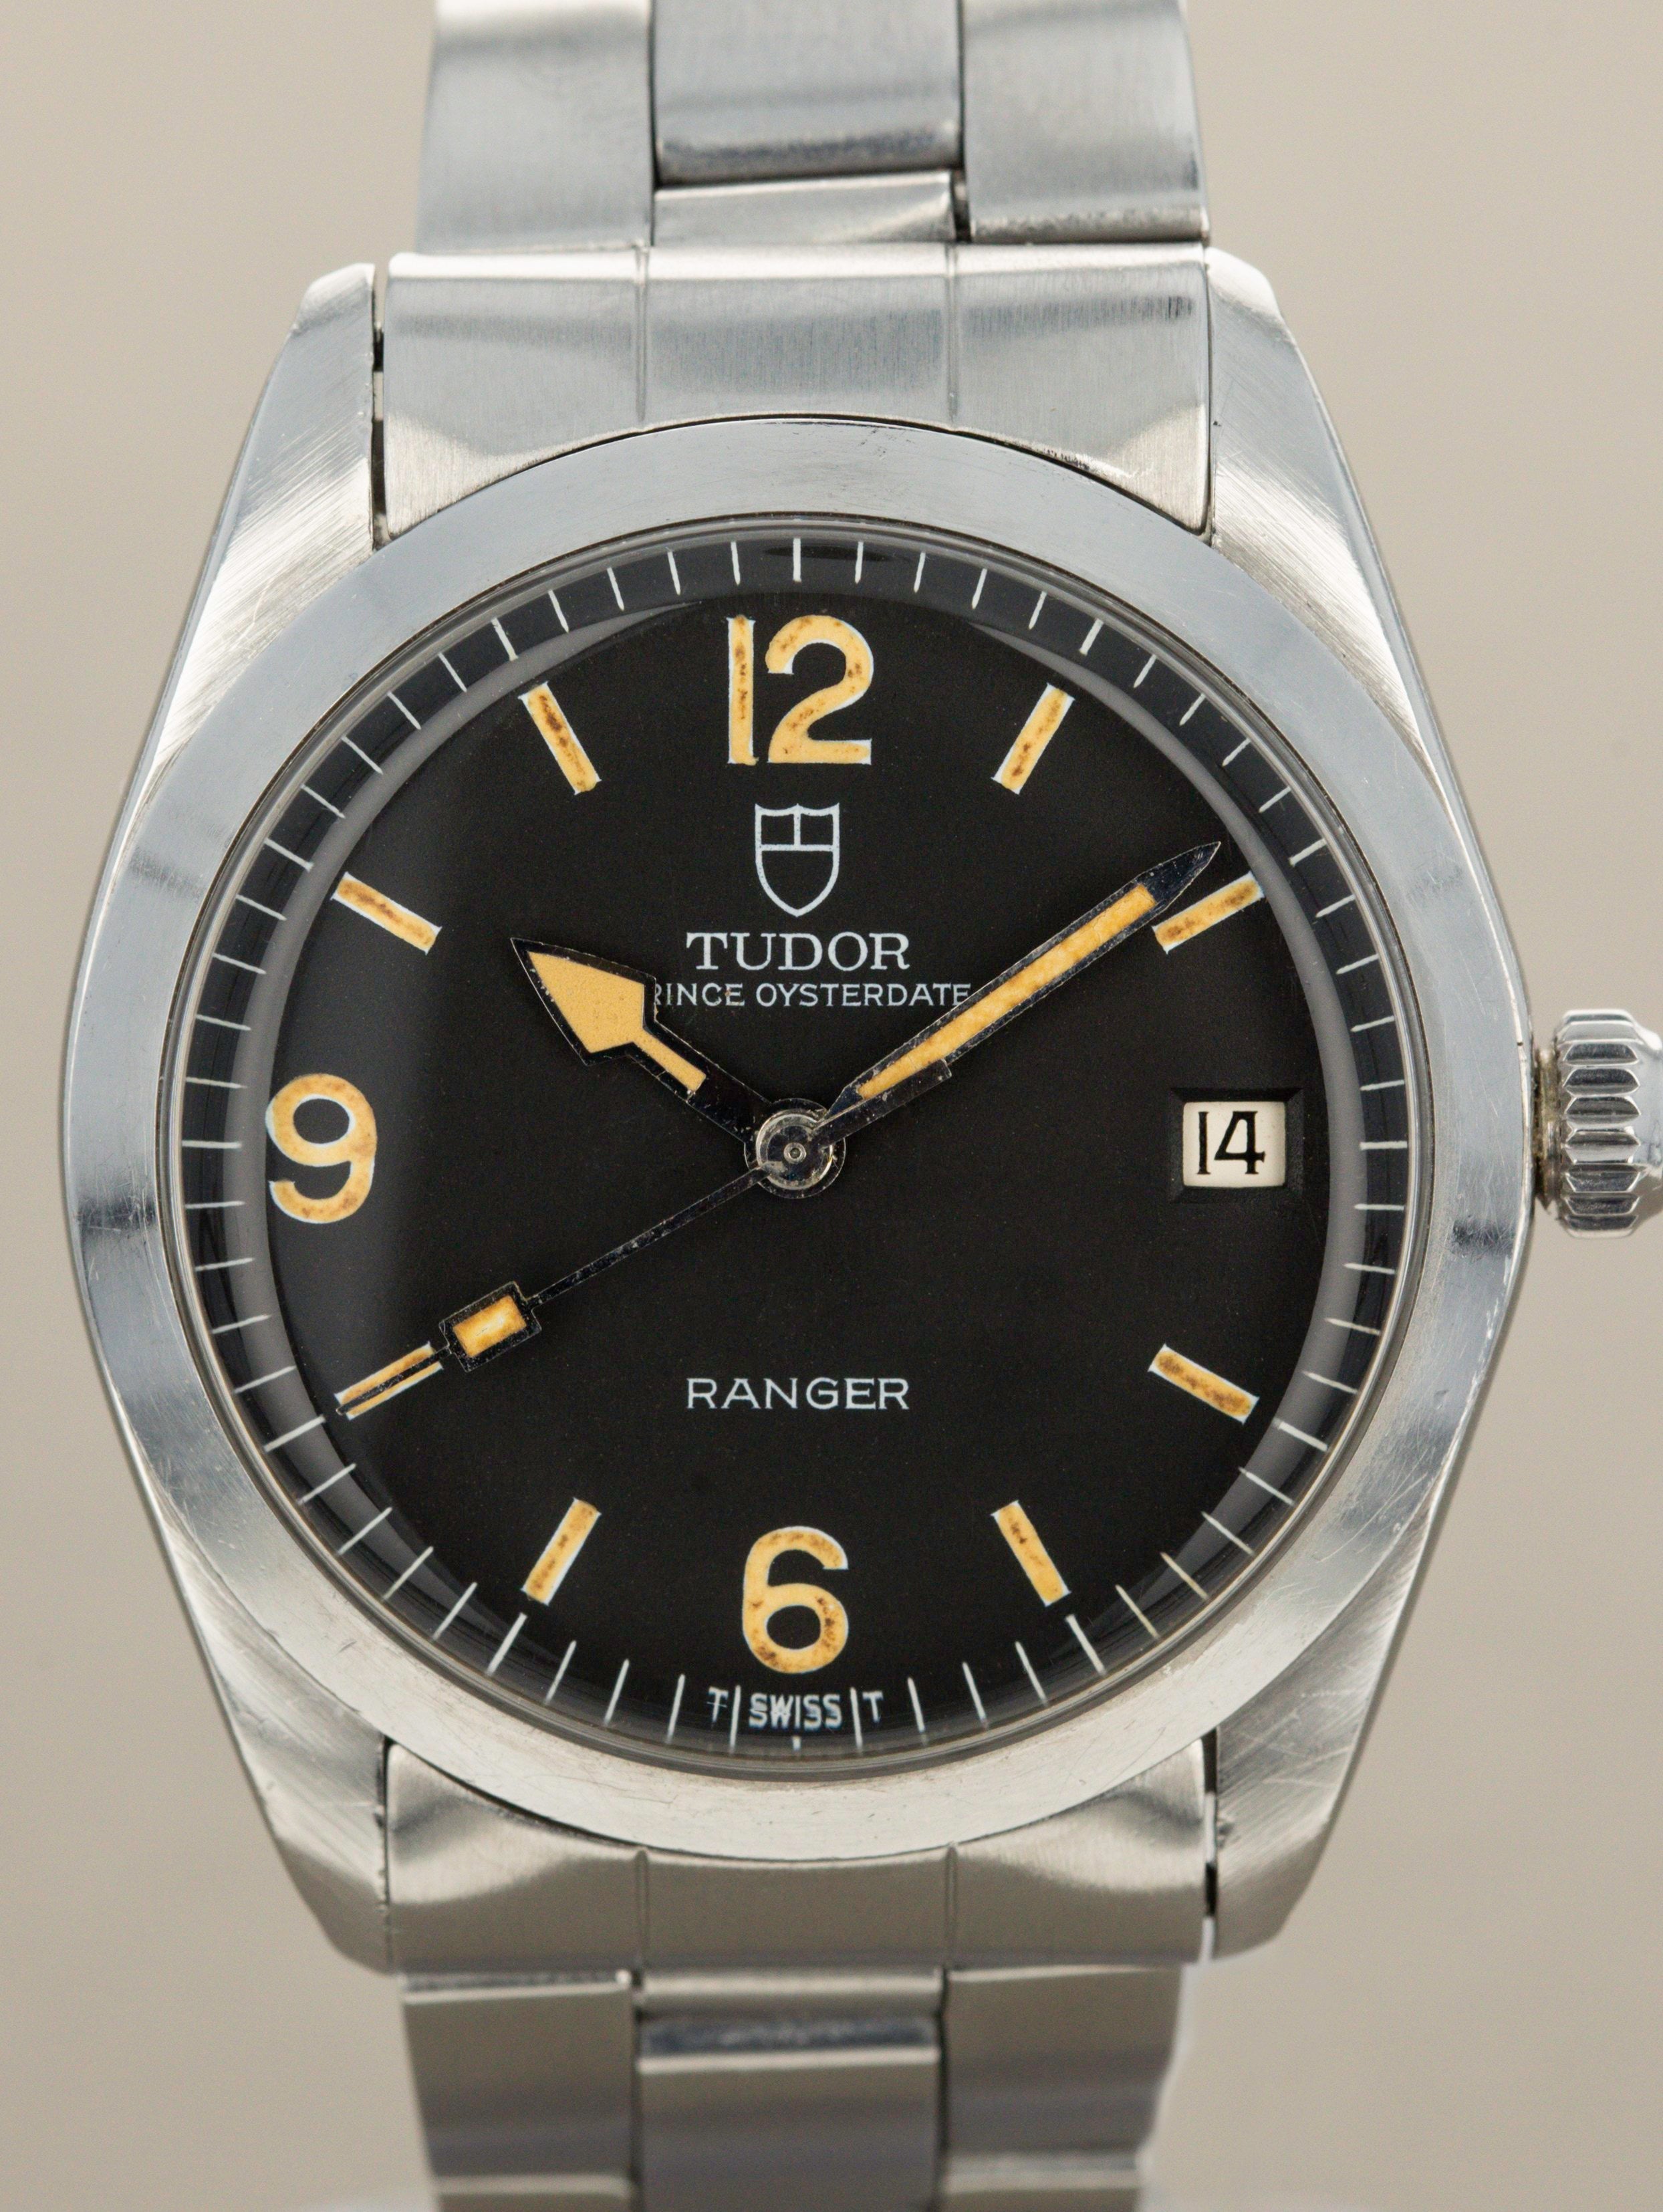 Tudor Ranger Date Ref. 9050/0